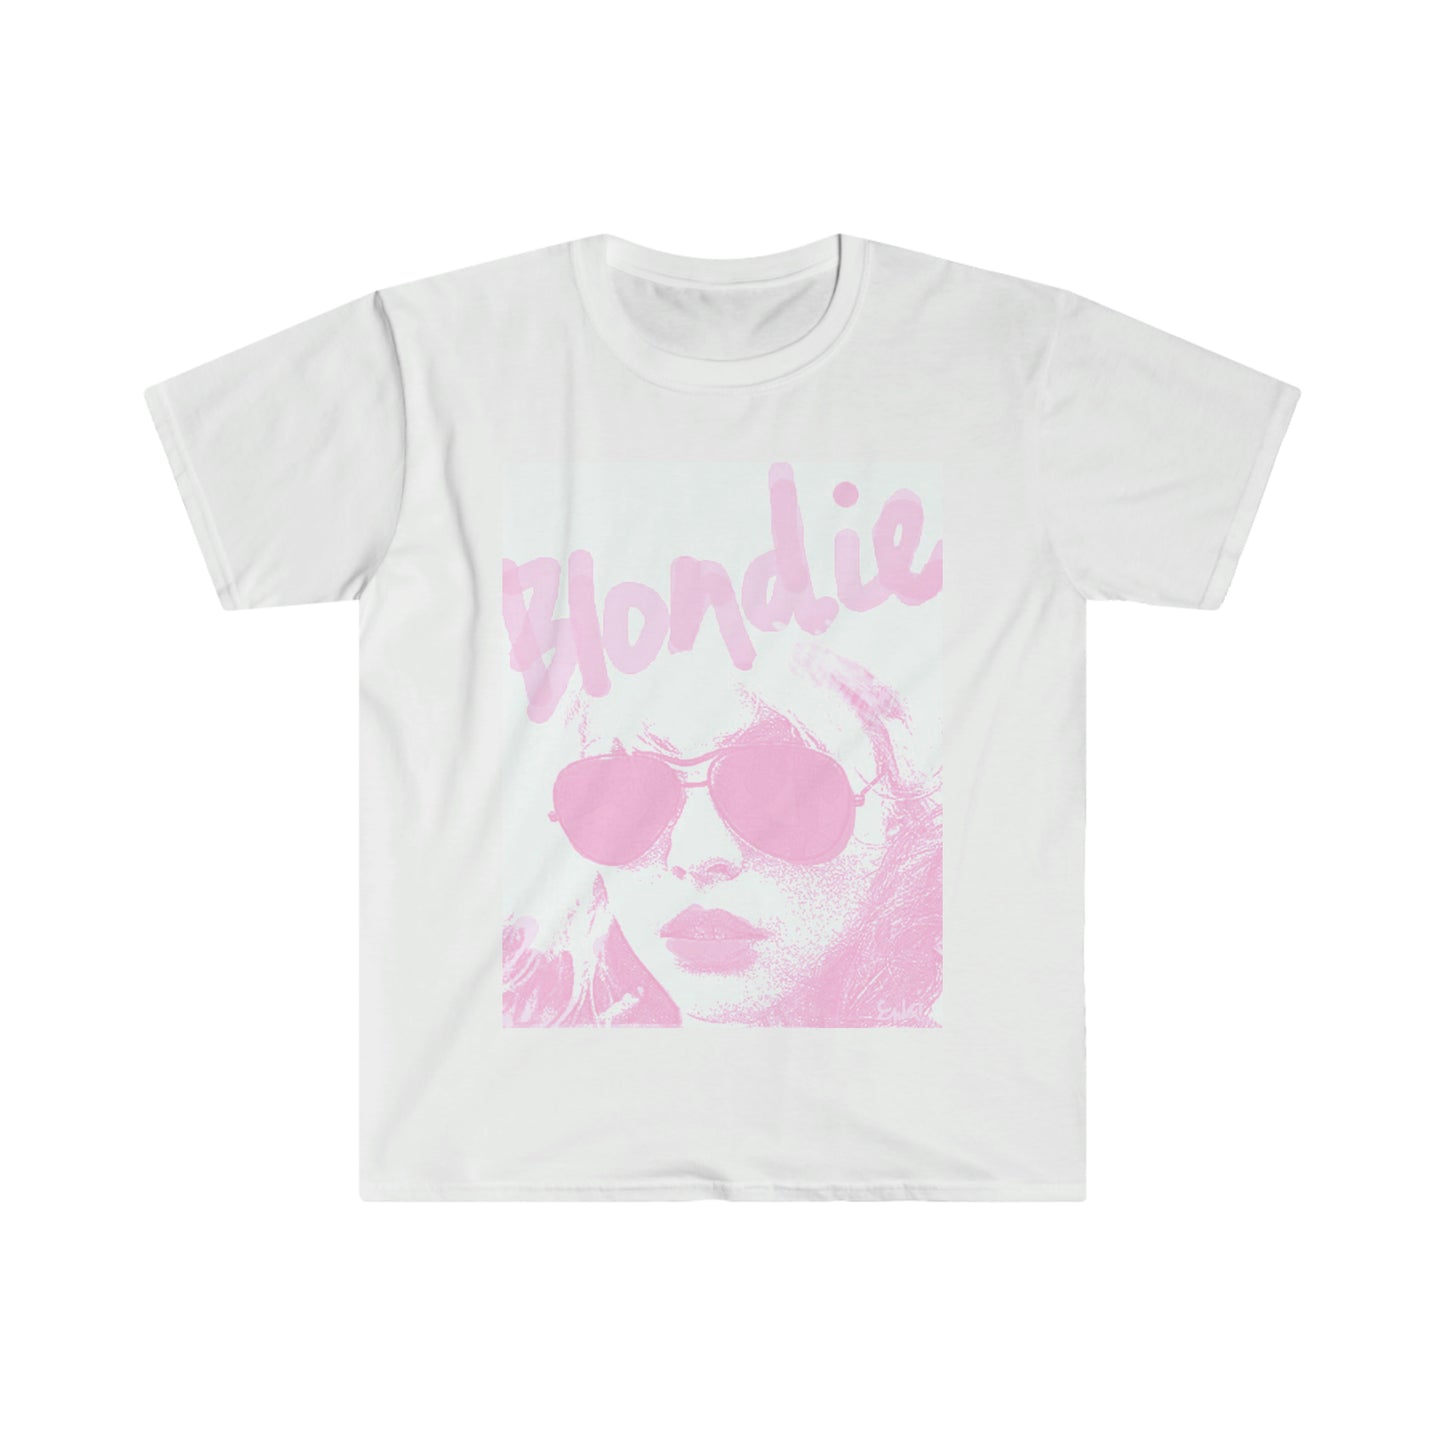 DEBBIE Classic Fit AmplifyDestroy Print Tee Shirt Blondie Debbie Harry